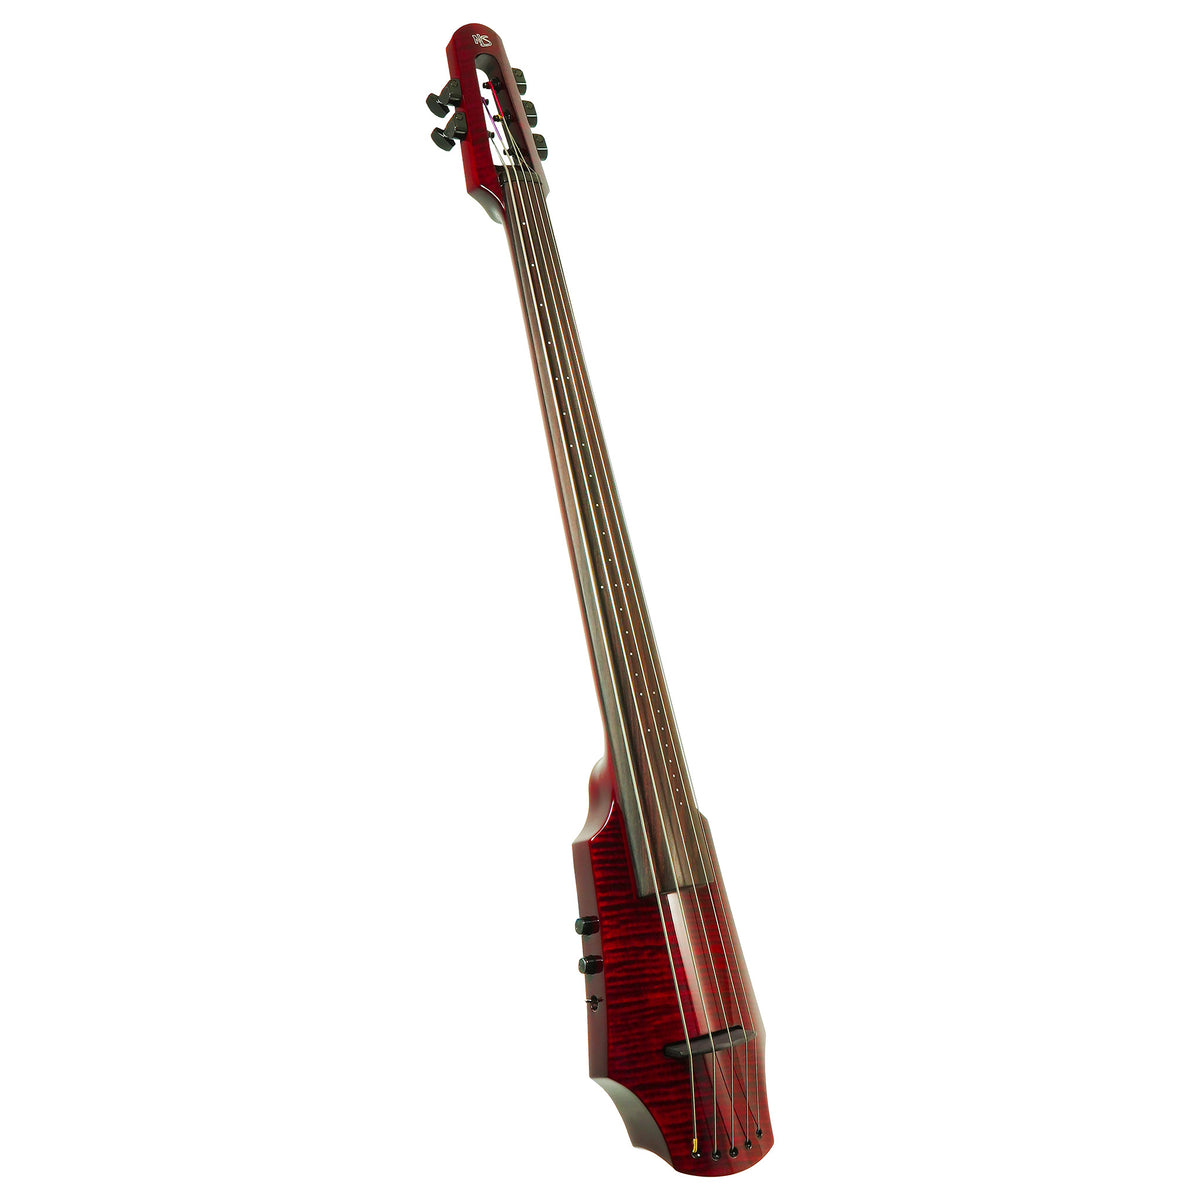 NS Design WAV 5-string Electric Cello